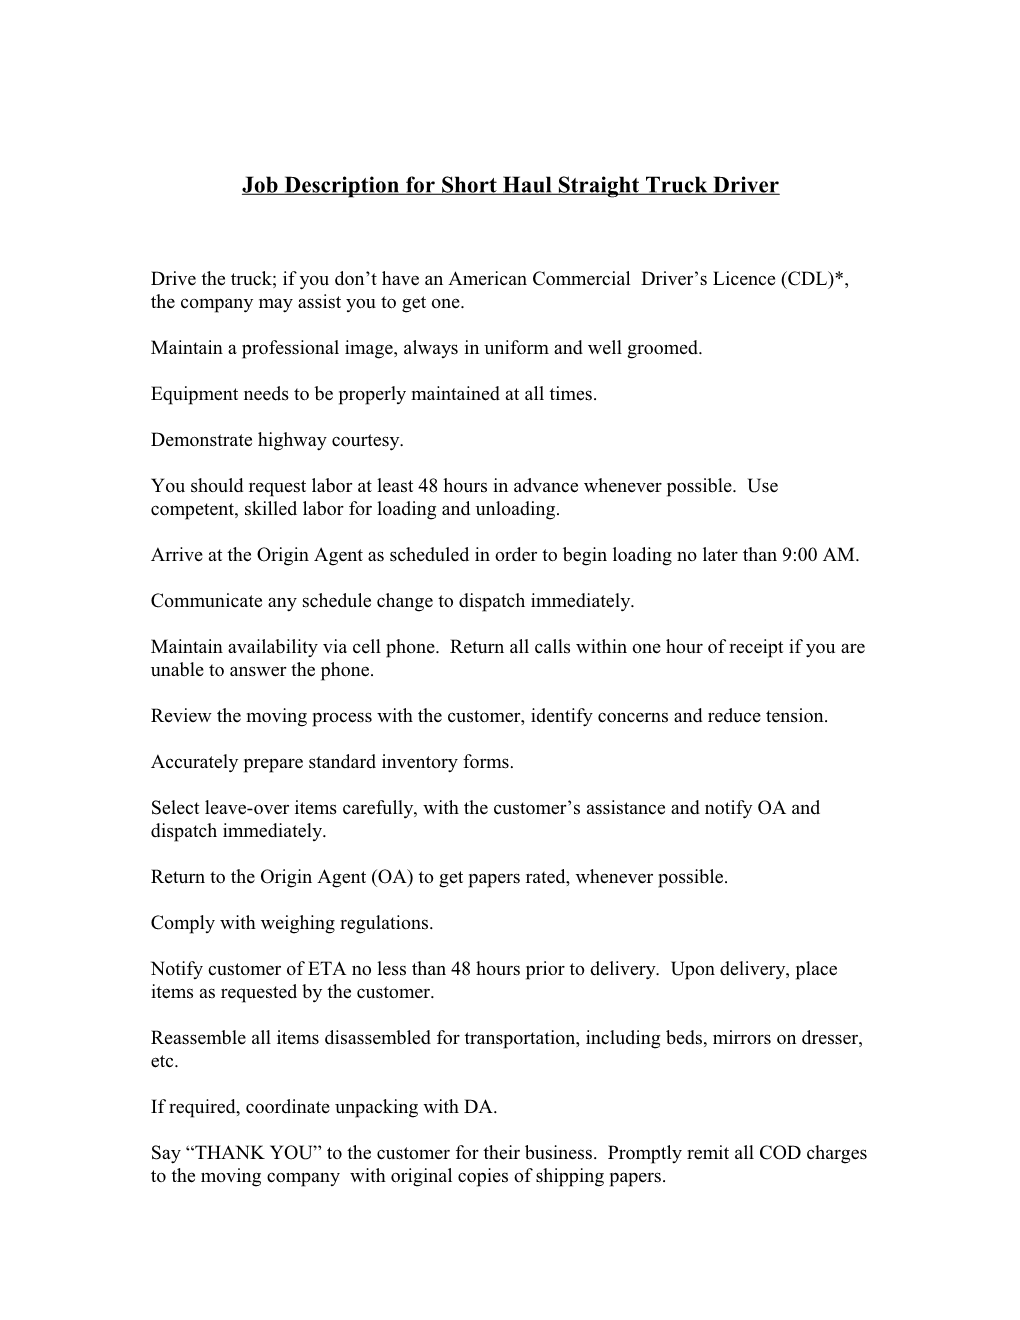 Job Description for Short Haul Driver